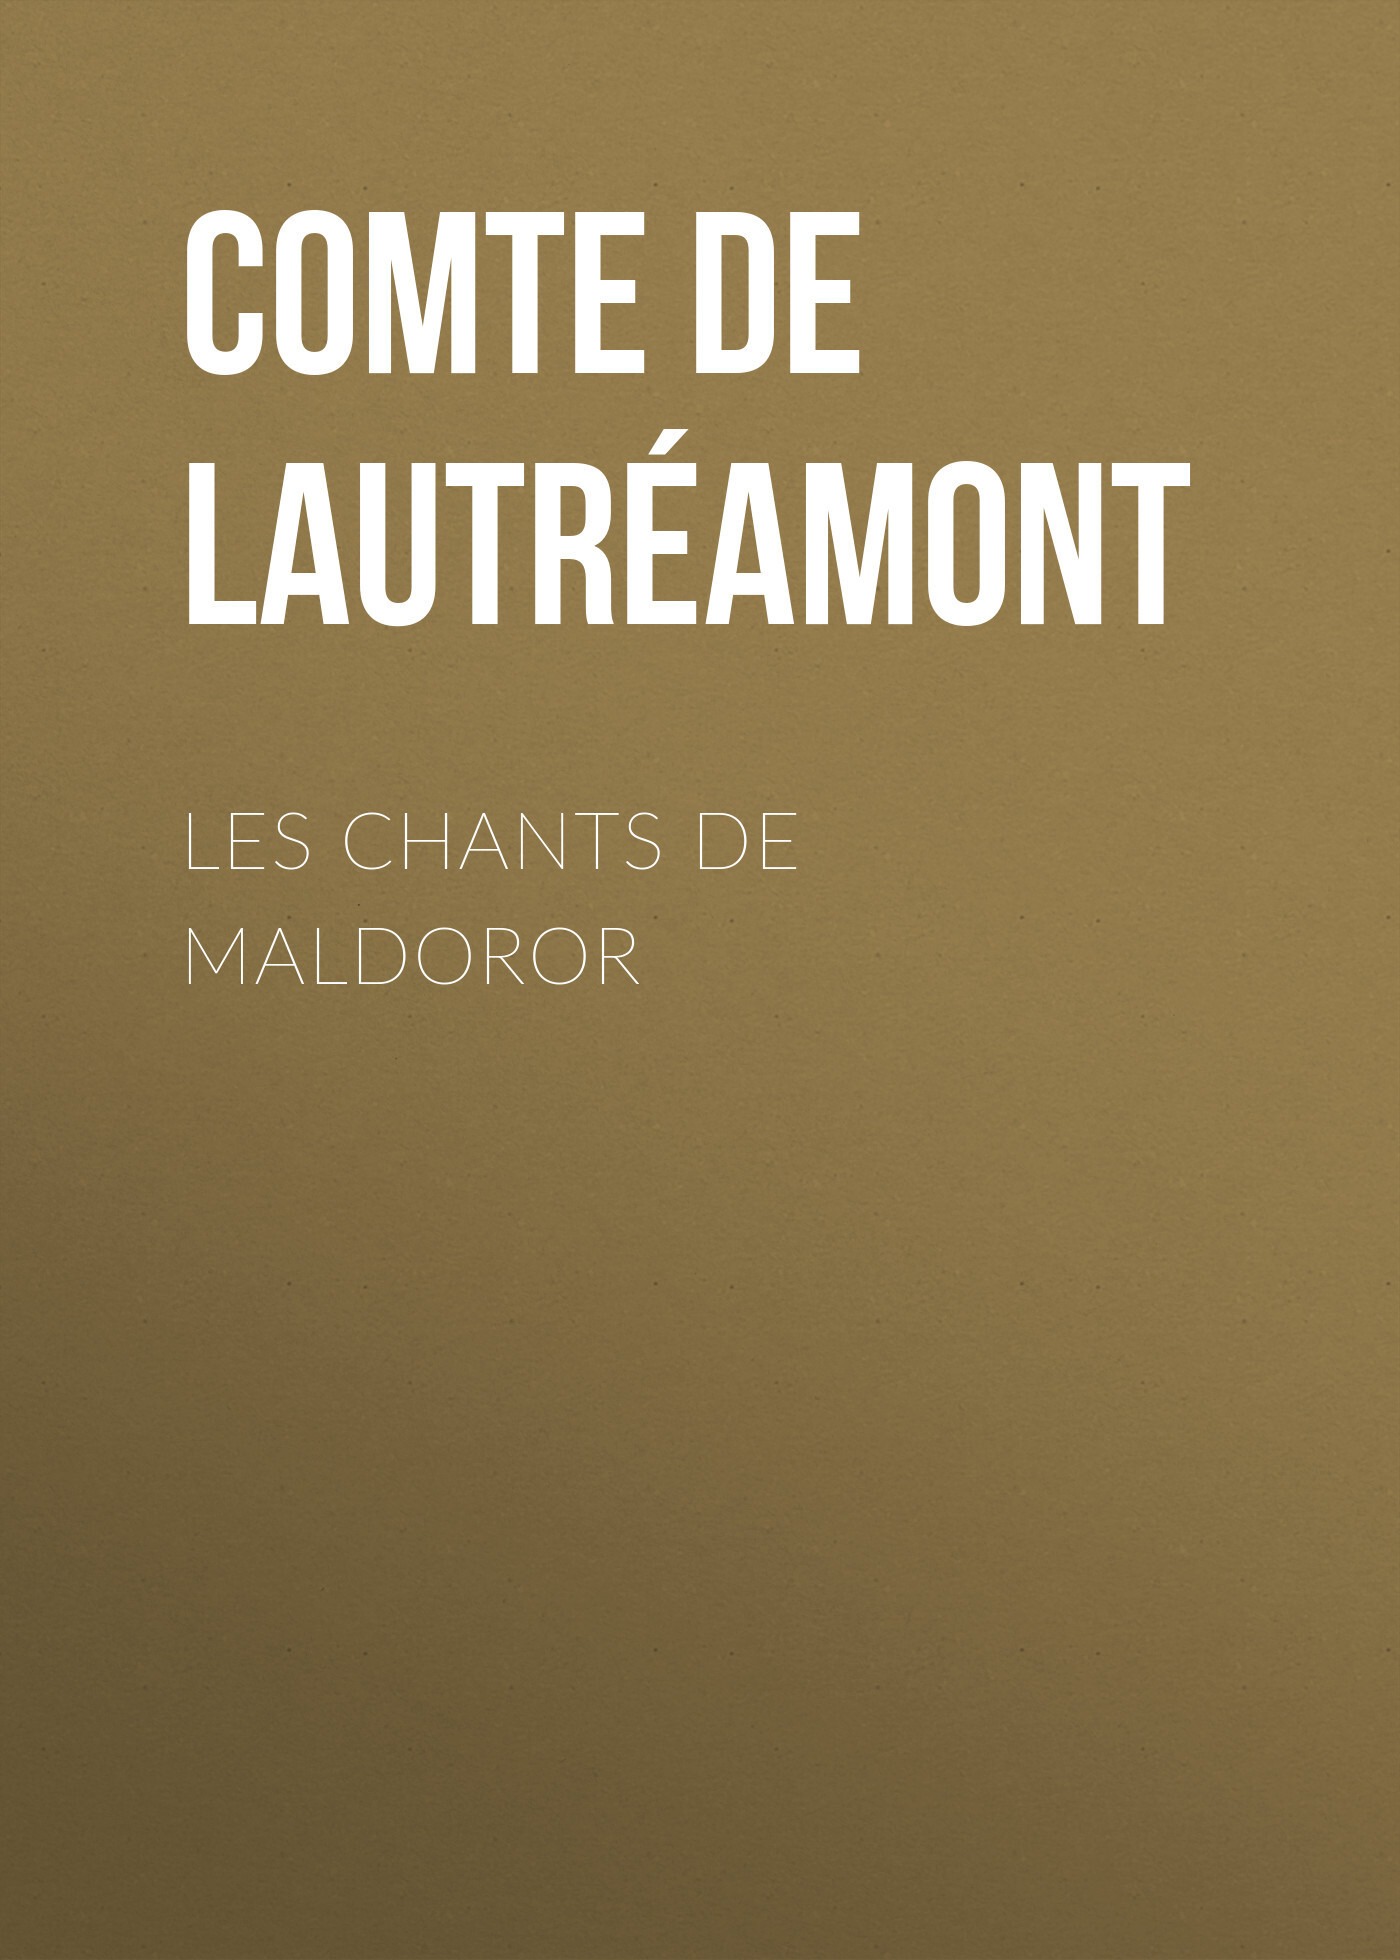 Книга Les Chants de Maldoror из серии , созданная Comte de Lautréamont, может относится к жанру Зарубежные стихи, Поэзия, Зарубежная старинная литература, Зарубежная классика. Стоимость электронной книги Les Chants de Maldoror с идентификатором 36322724 составляет 0 руб.